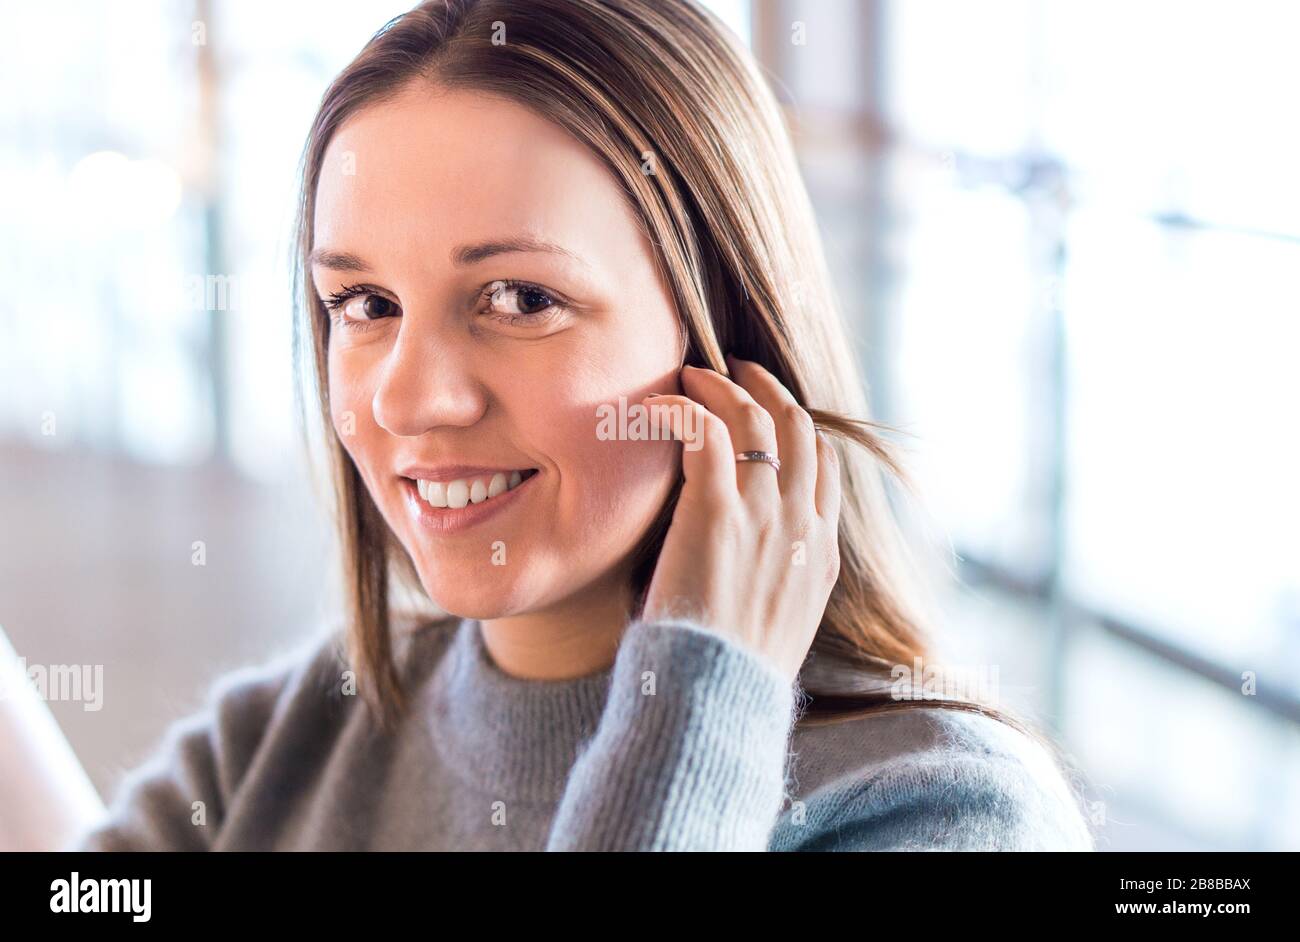 Belle jeune femme souriant et touchant les cheveux avec la main dans le bureau moderne ou le bâtiment d'affaires. Bonne personne regardant l'appareil photo. Banque D'Images